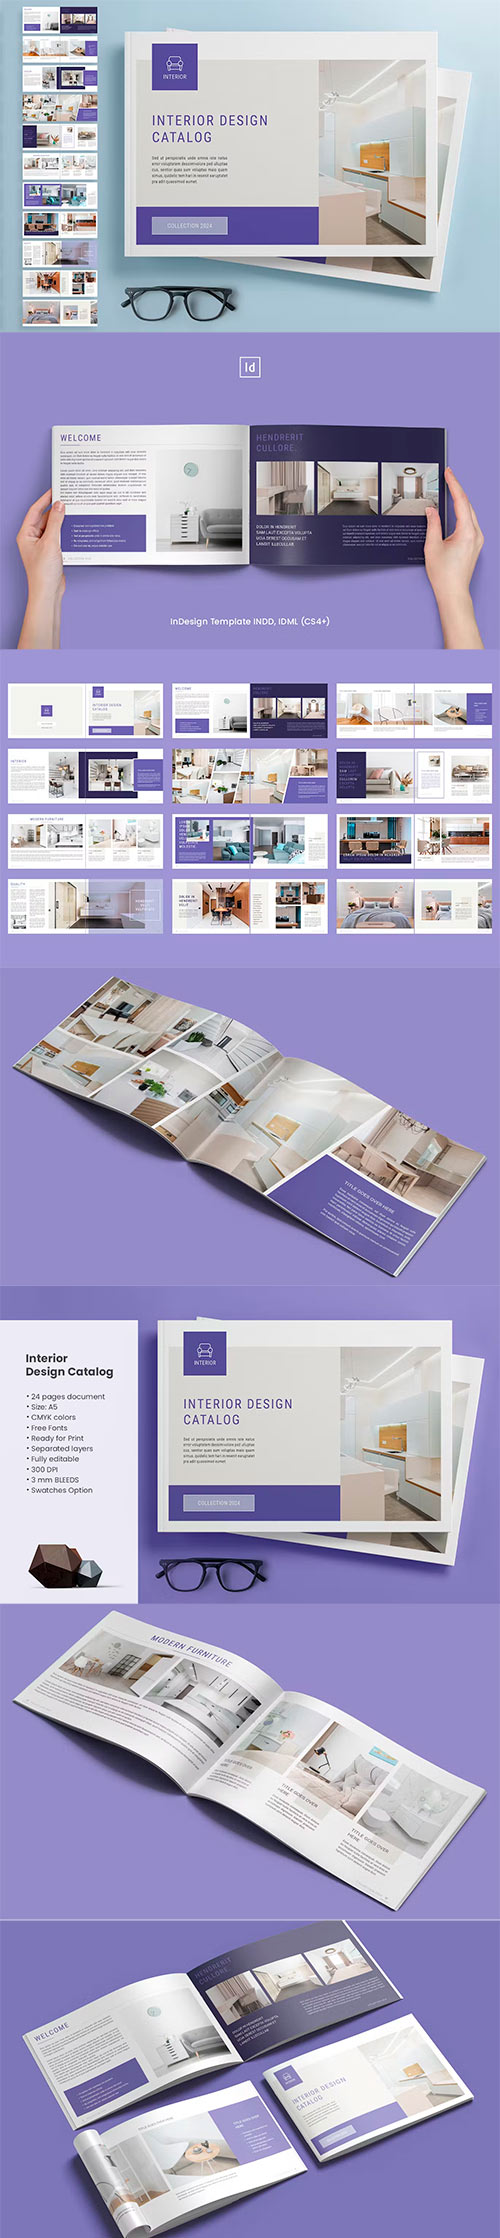 Interior Design Catalog E4BE5U7